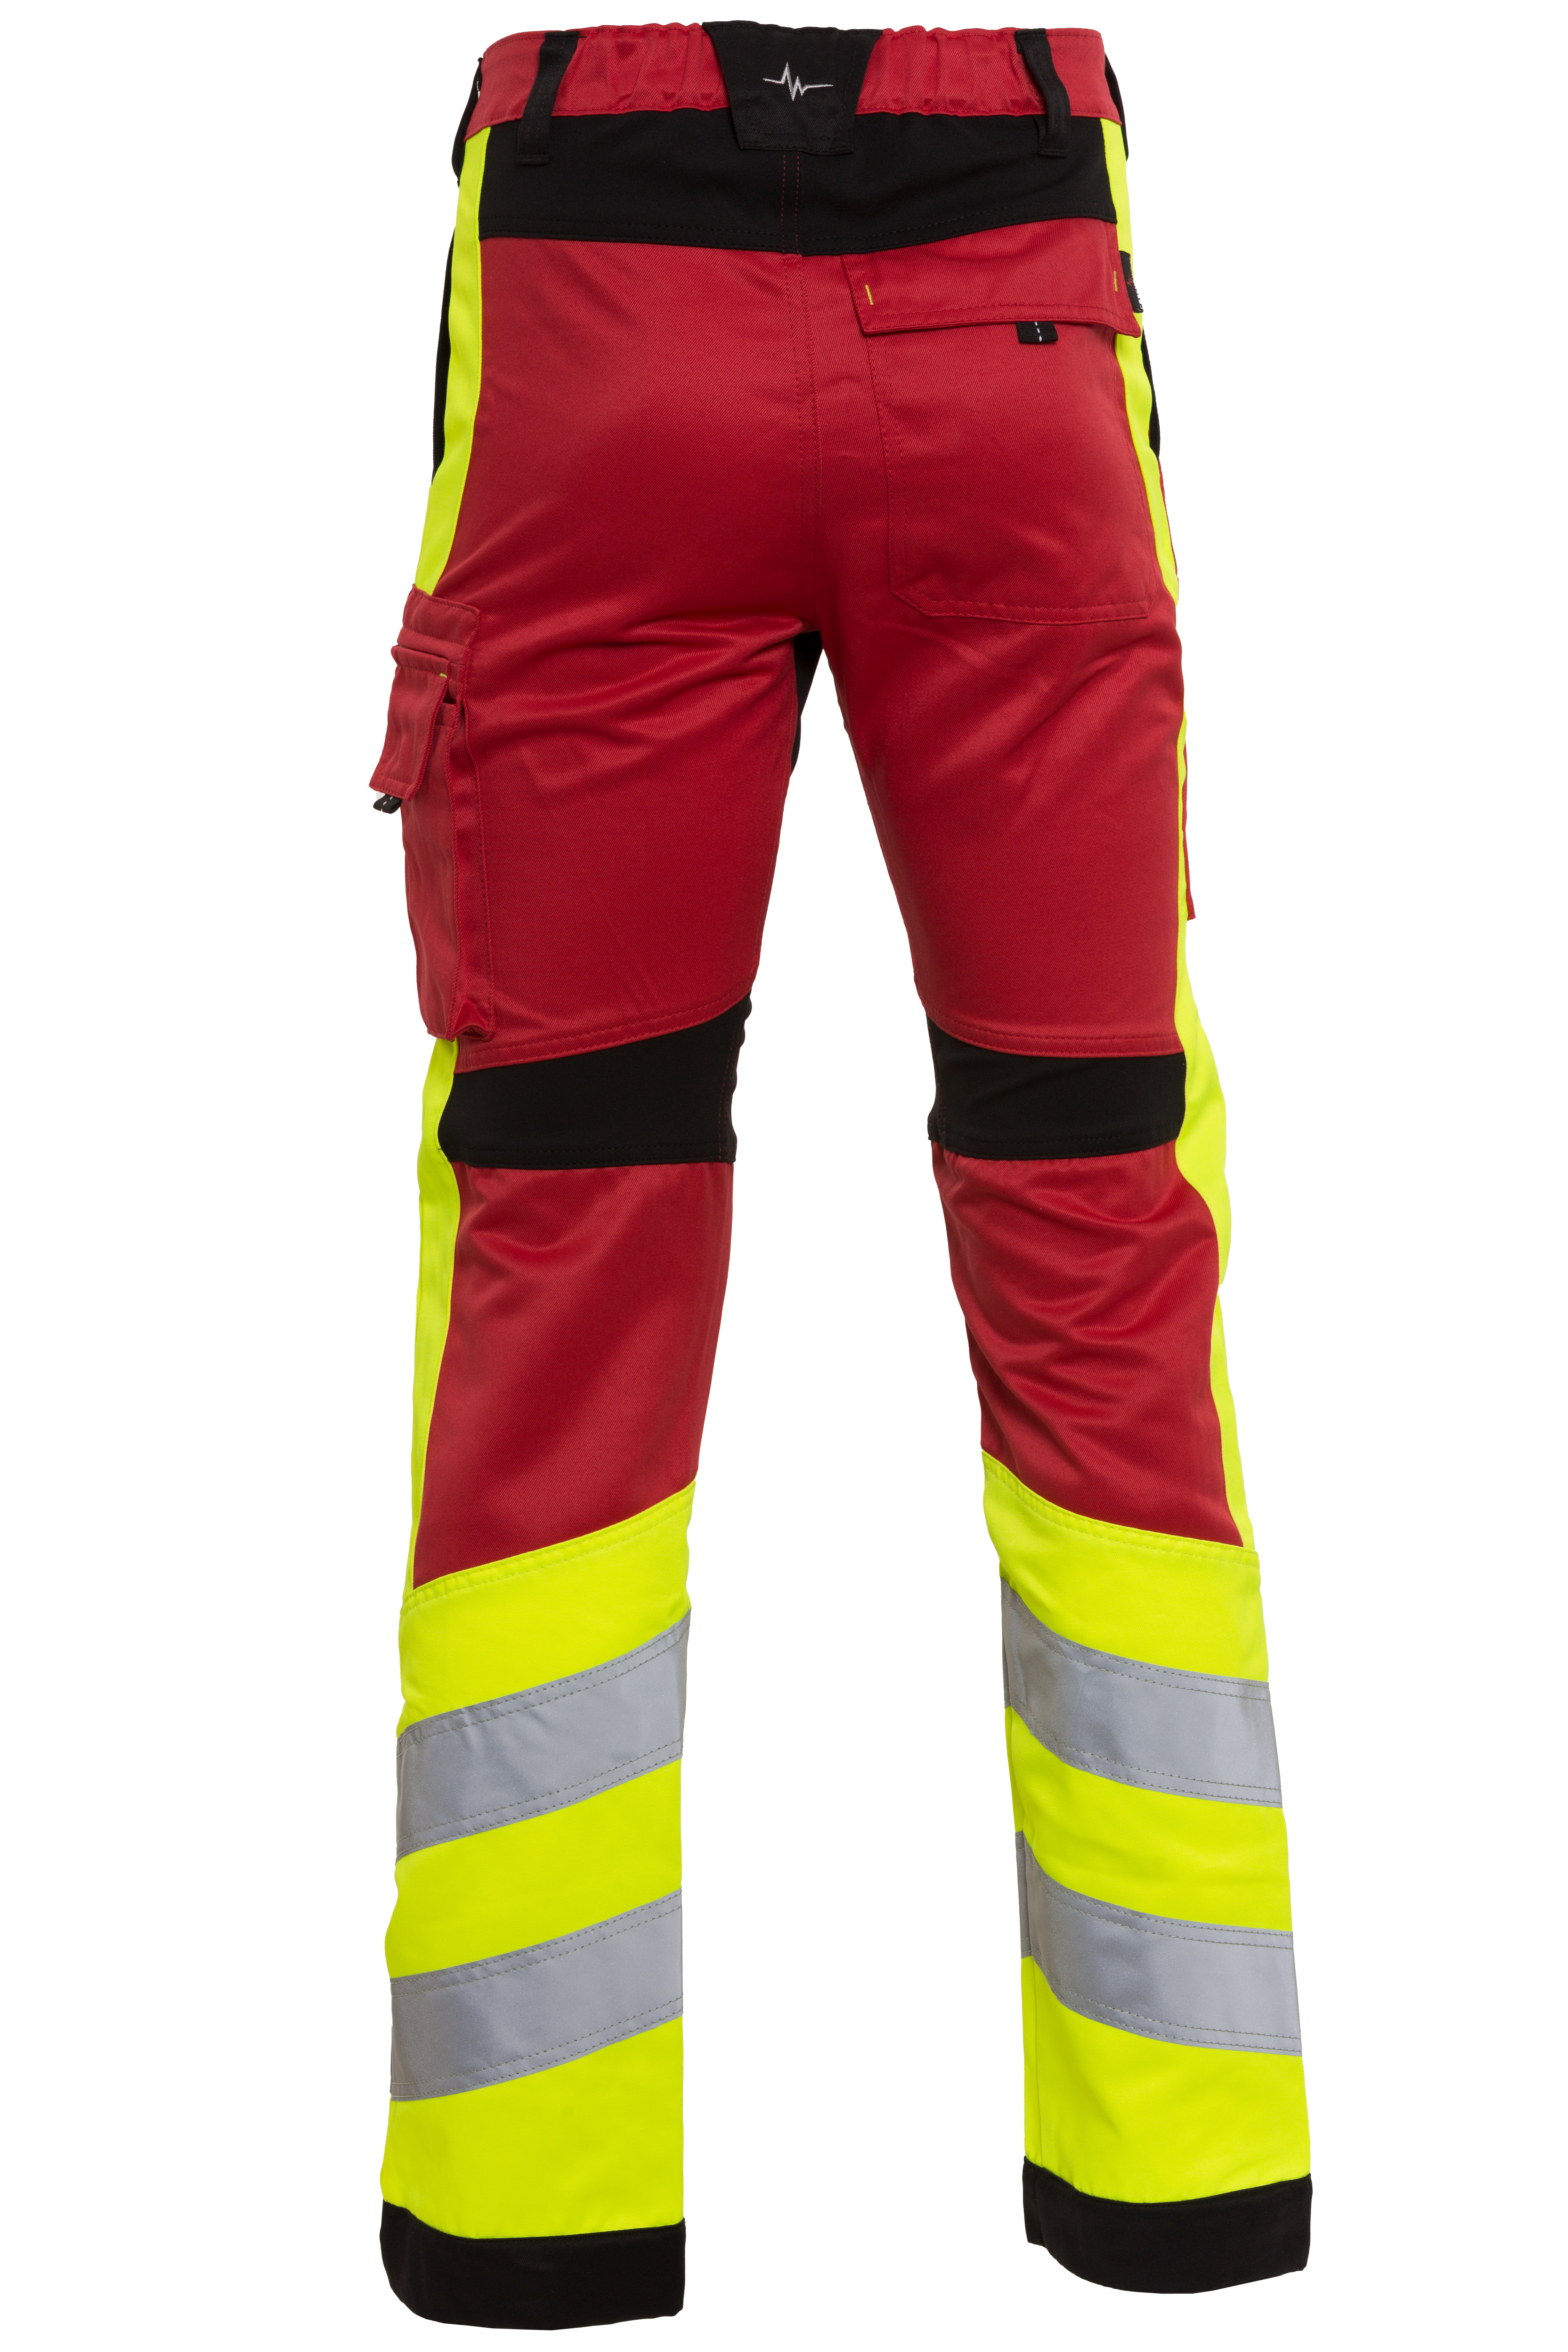 Rescuewear Unisex Hose Stretch HiVis Klasse 1 Rot / Schwarz / Neon Gelb  - 24